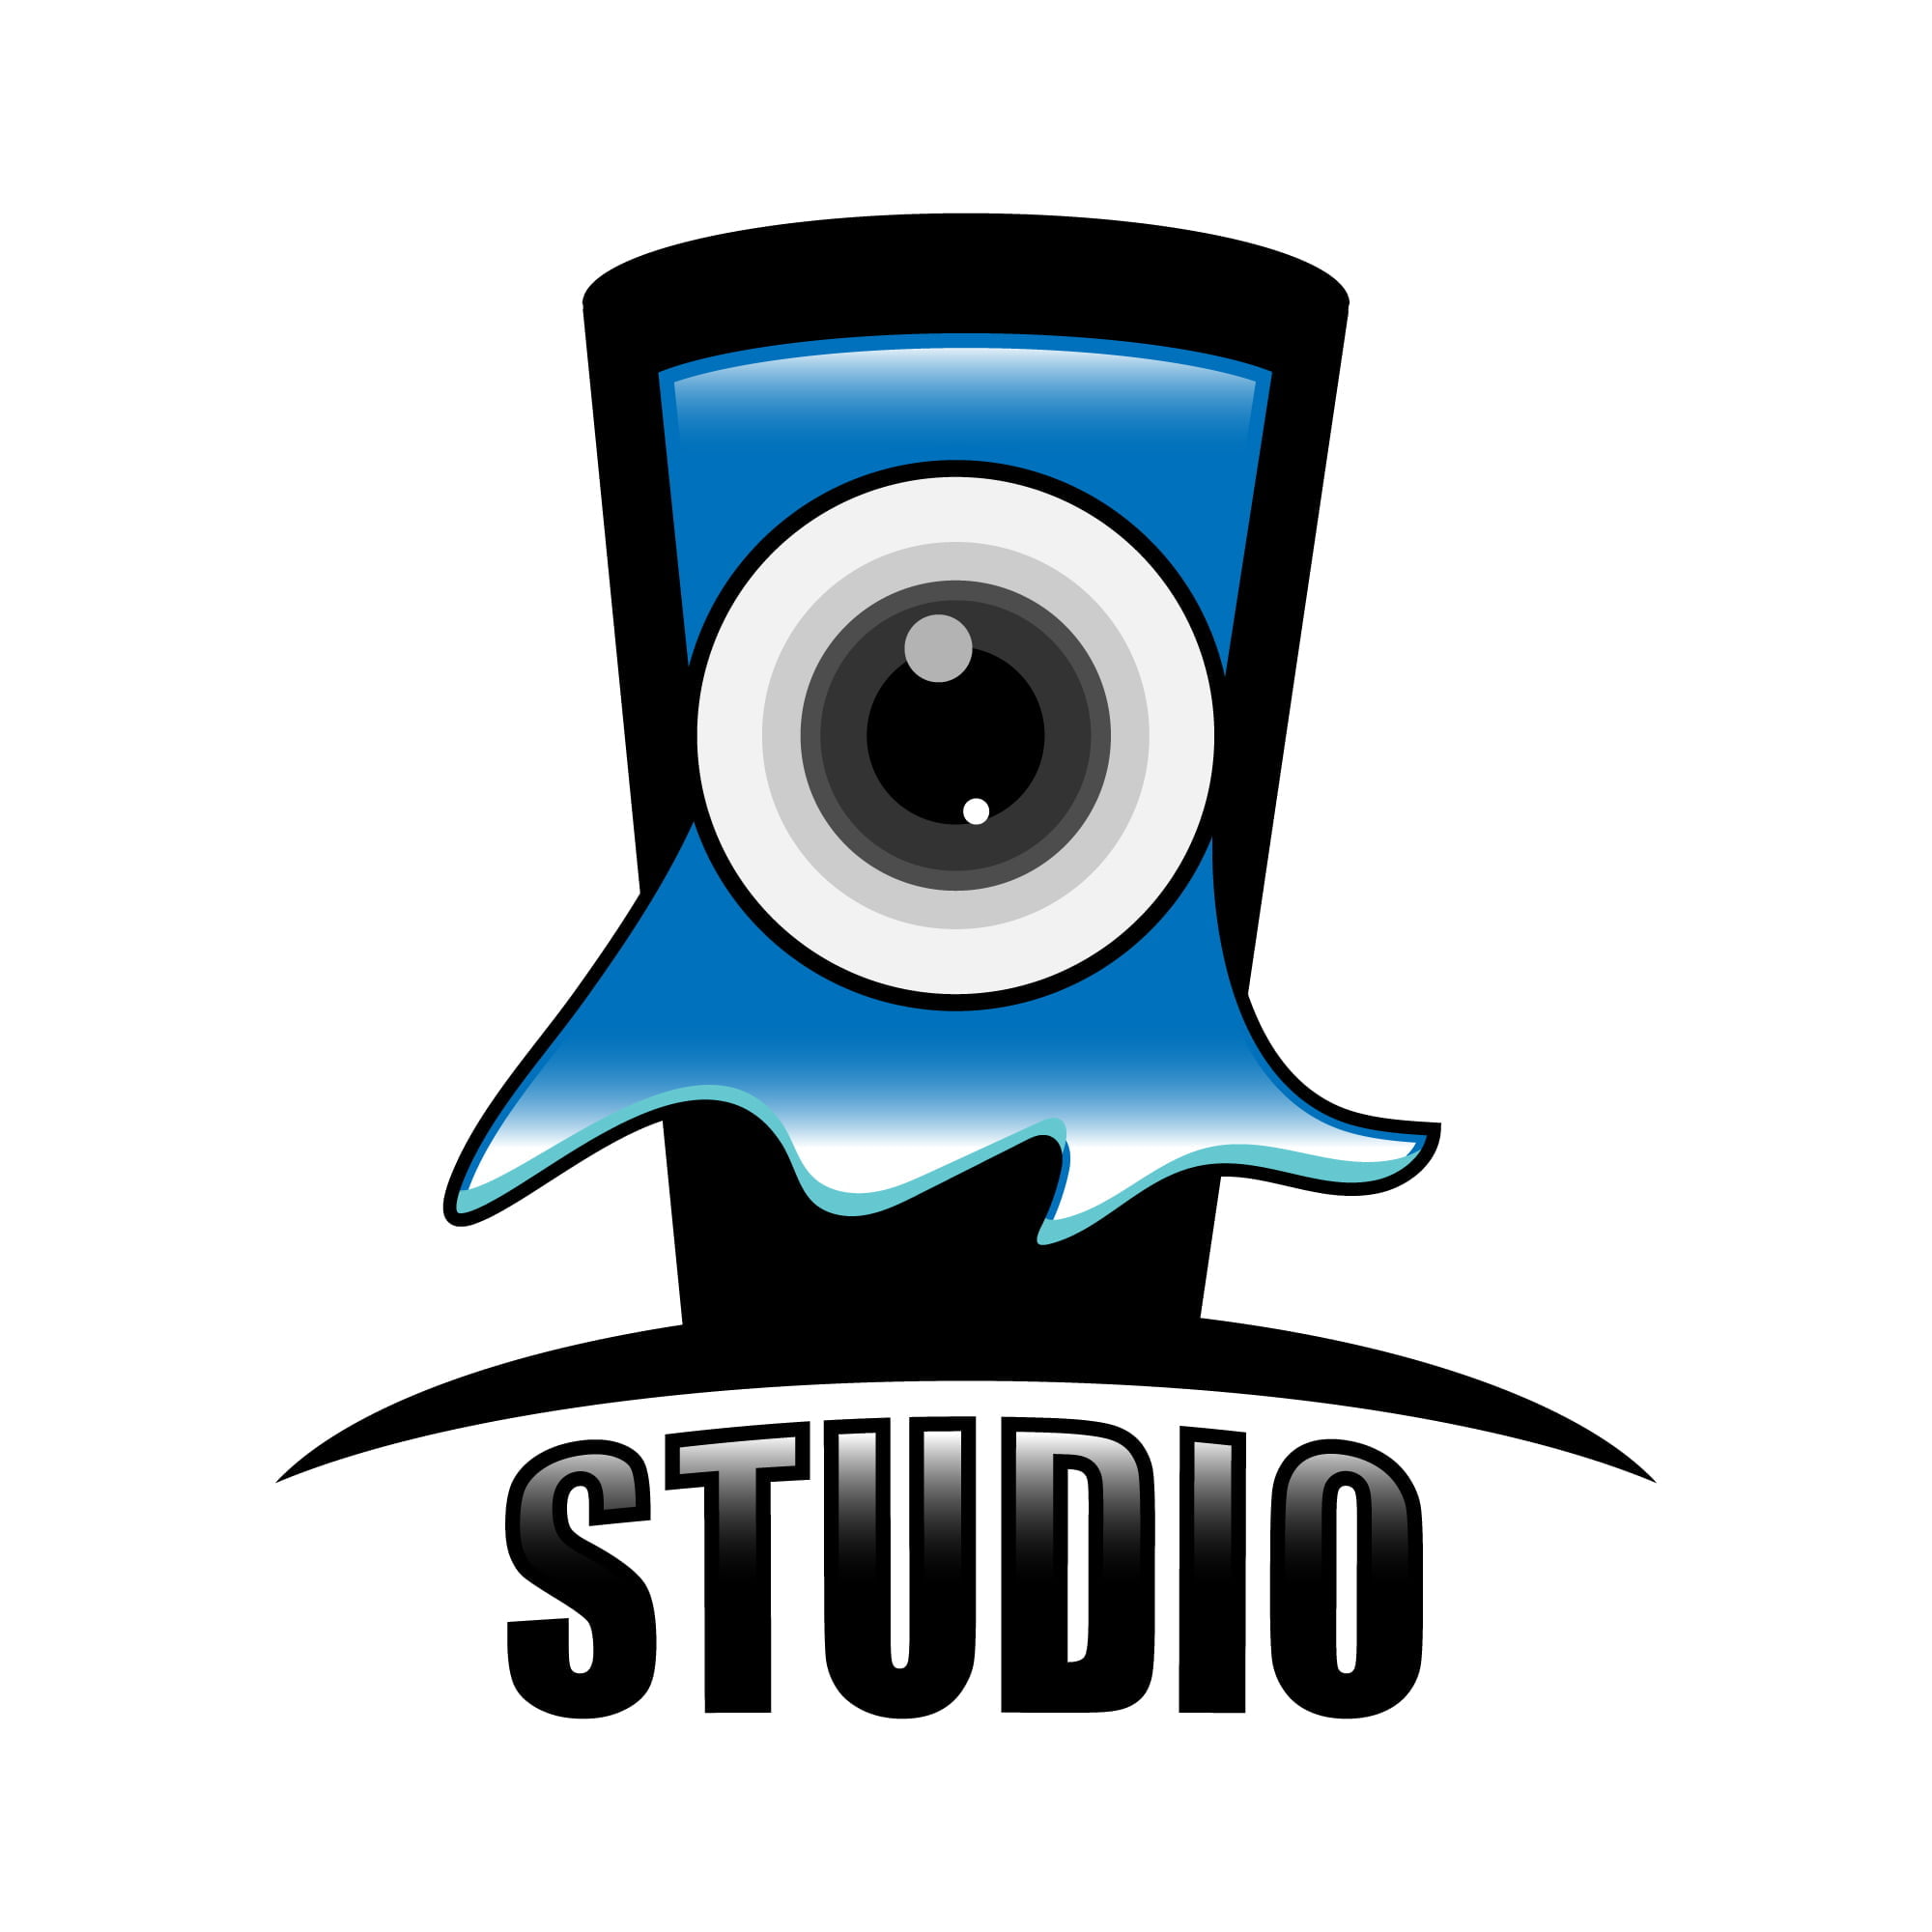 studio logo ideas 1